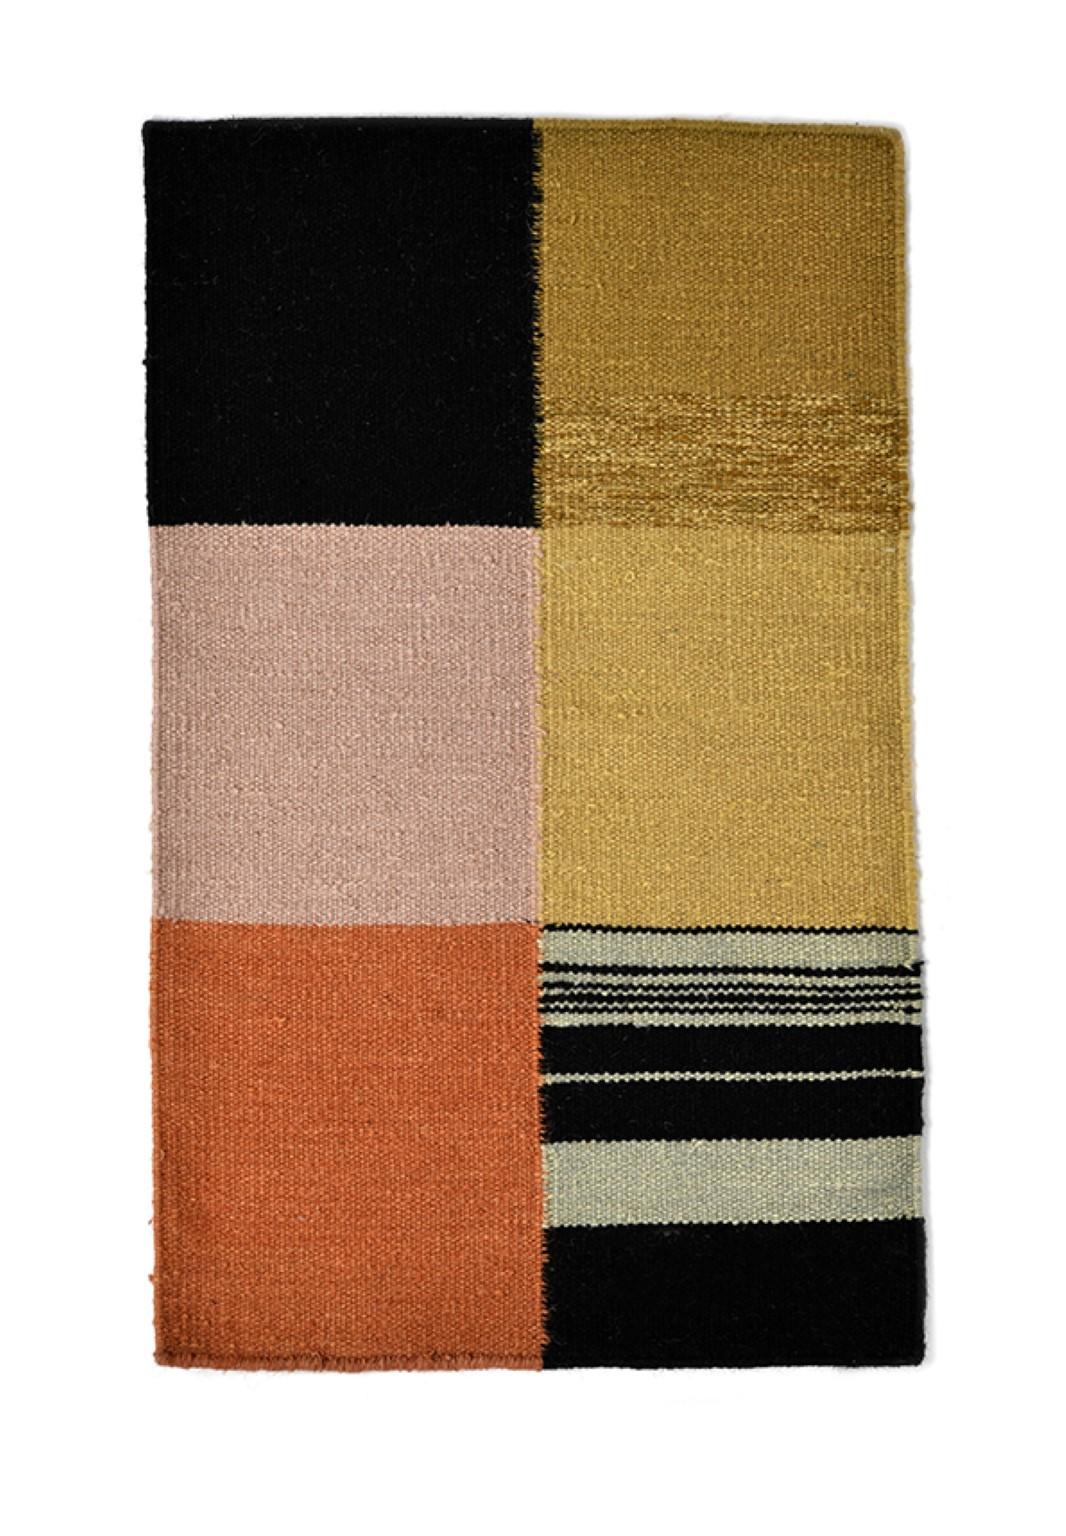 Poster textile noué à la main n° 278 par Lyk Carpet
Dimensions : L 120 x L 180 cm.
Matériaux : 100% laine des hauts plateaux tibétains, laine vierge peignée et filée à la main, laine naturelle teintée dans la masse, 100 nœuds par pouce carré.
Les